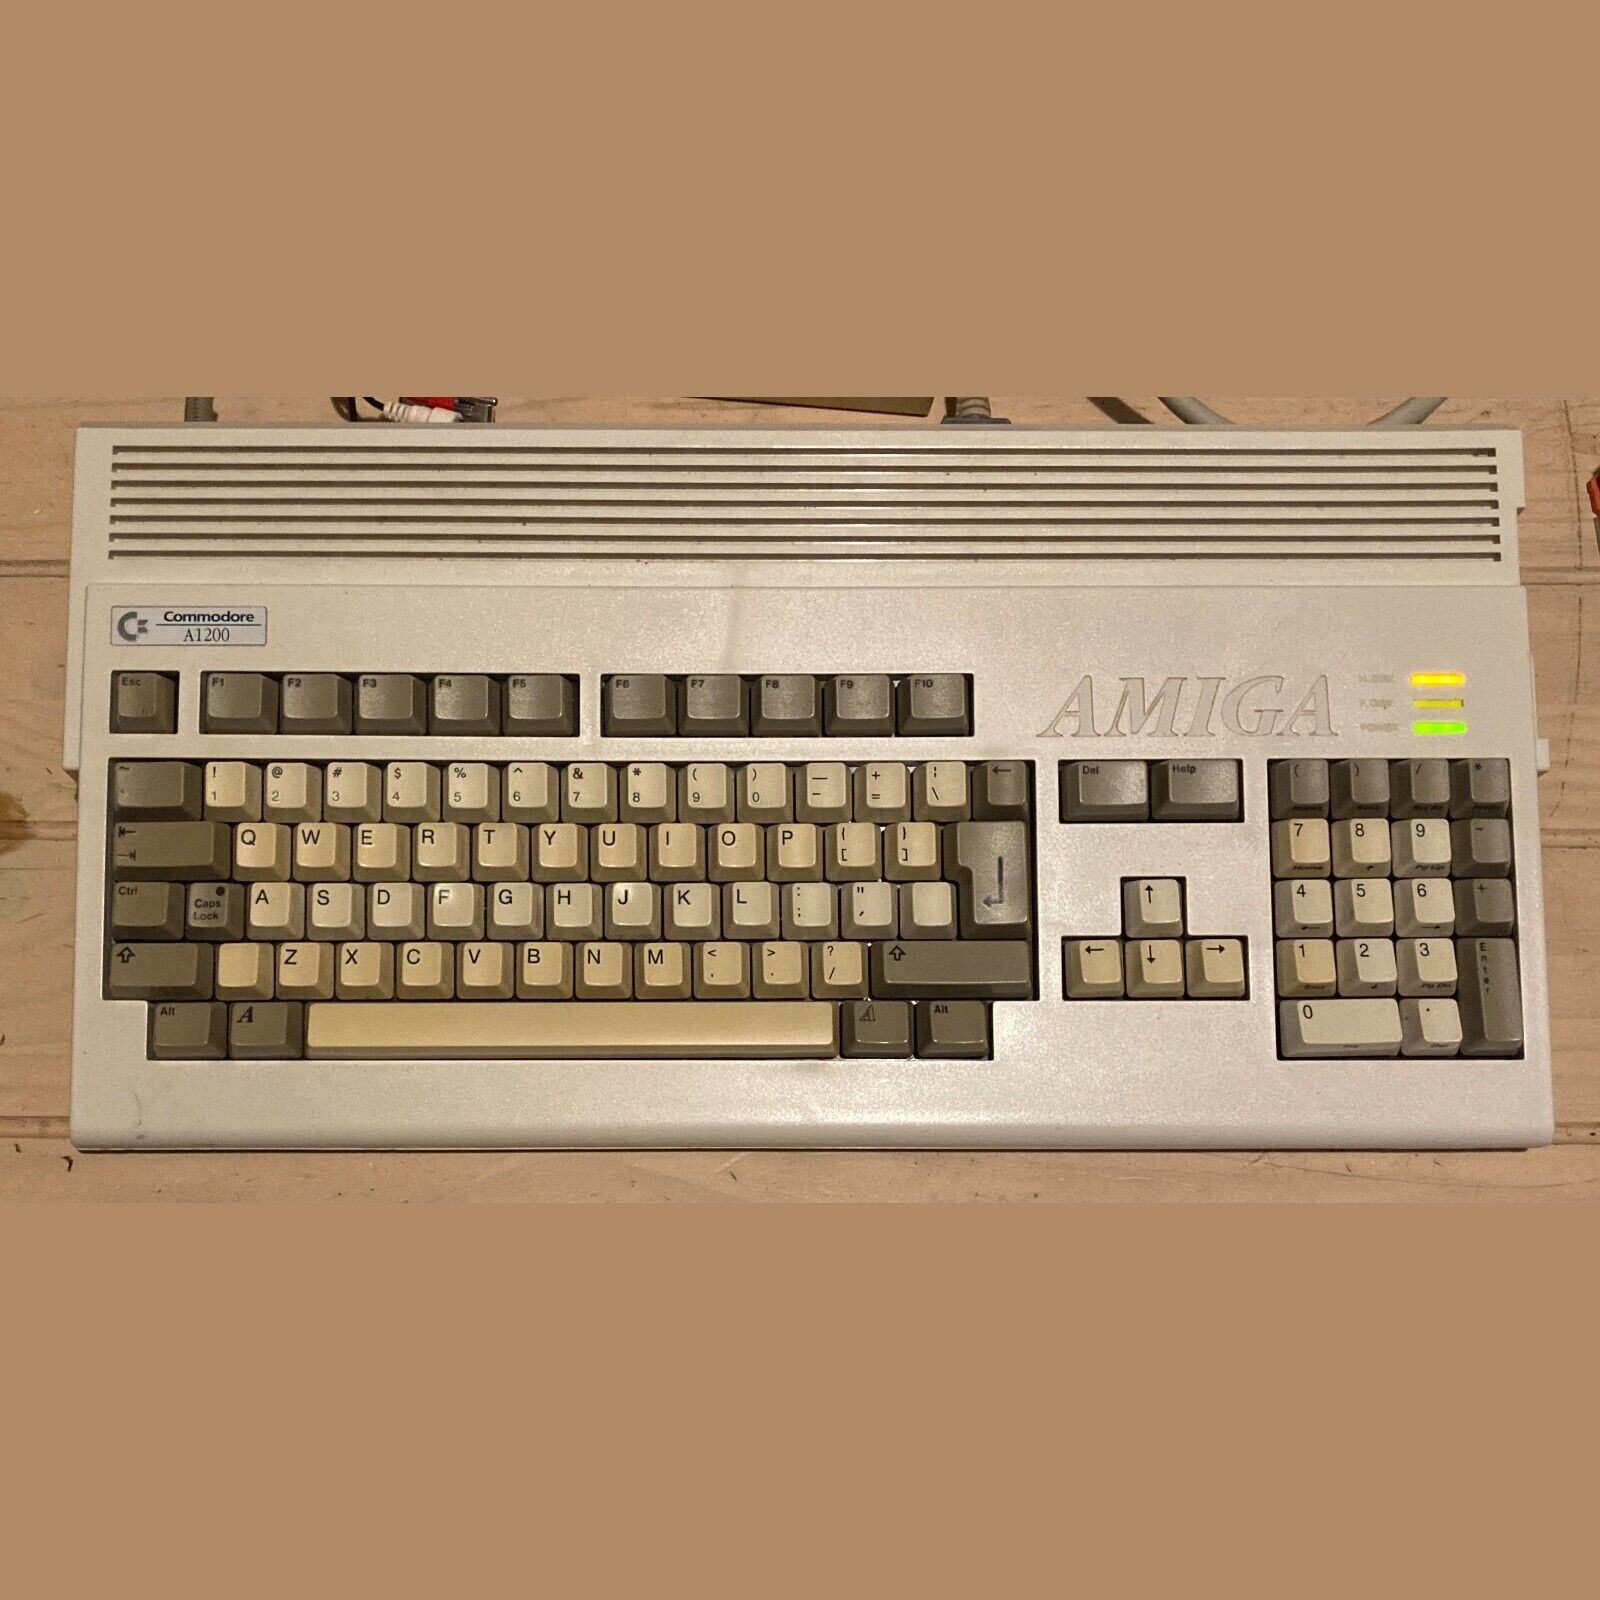 Commodore Amiga 1200 + MB1230XA 68030 50mhz + 8MB RAM + 120MB hard drive